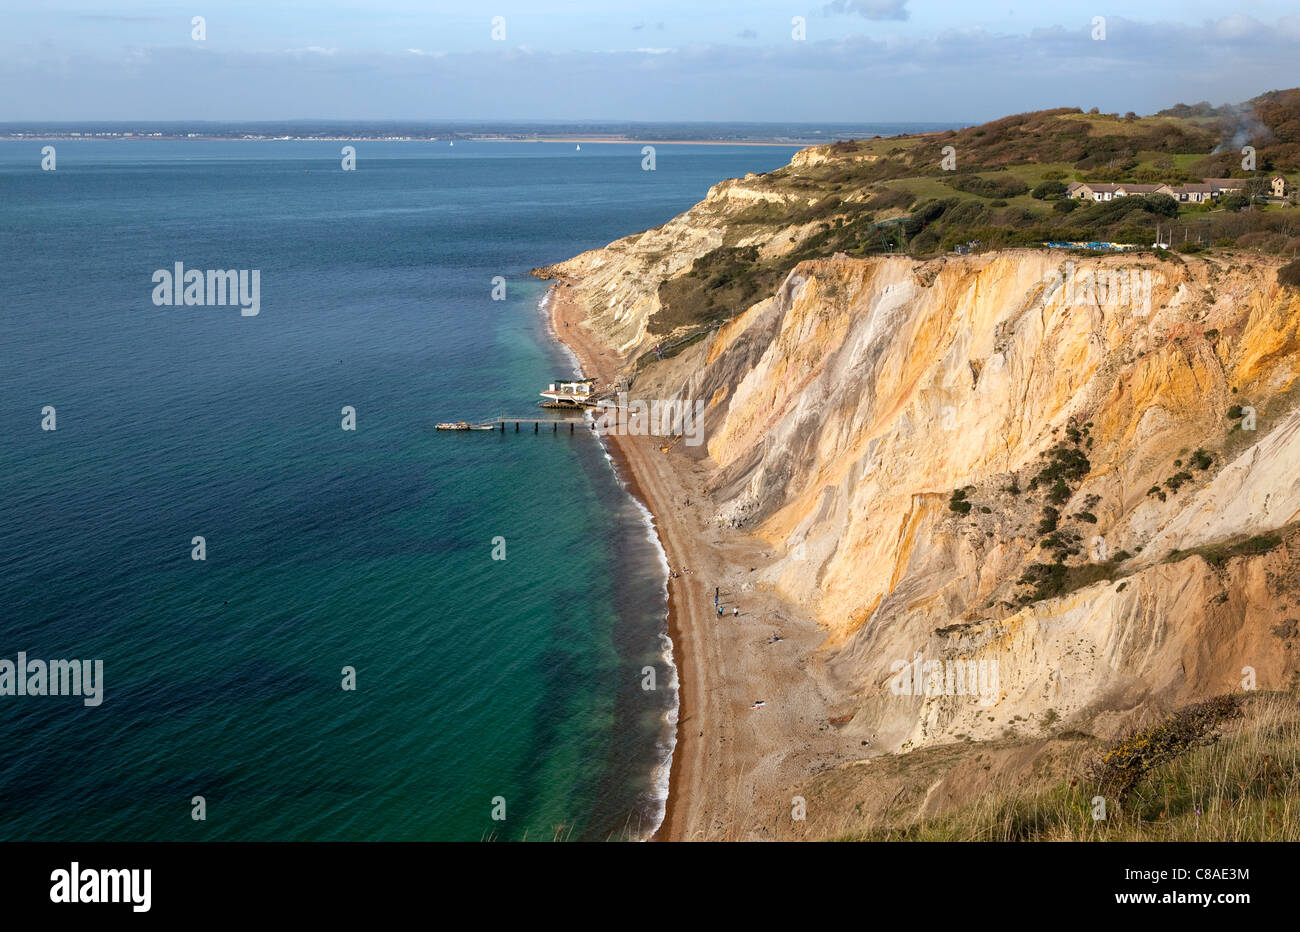 De l'Alun Bay, île de Wight. D'intérêt géologique et une attraction touristique, la baie est réputée pour ses falaises de sable coloré. Banque D'Images